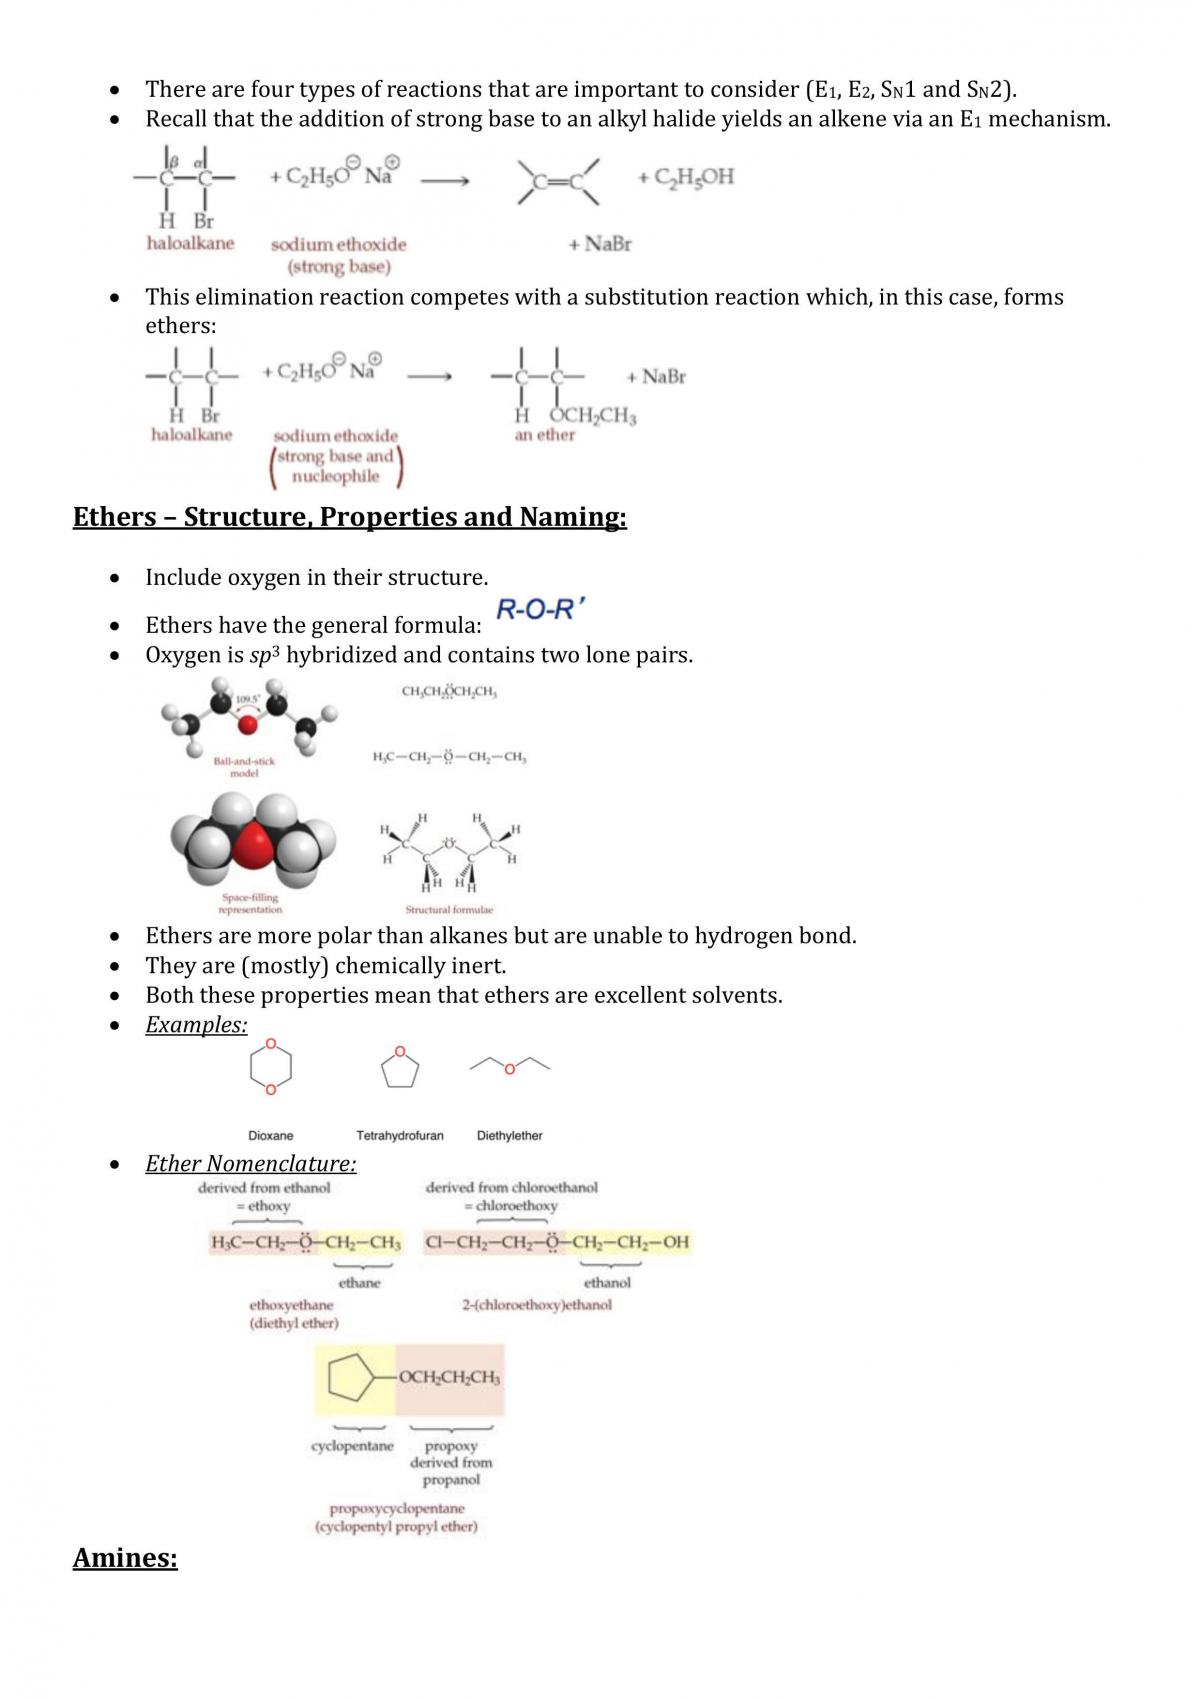 Sodium Bicarbonate - Chemical Economics Handbook (CEH)